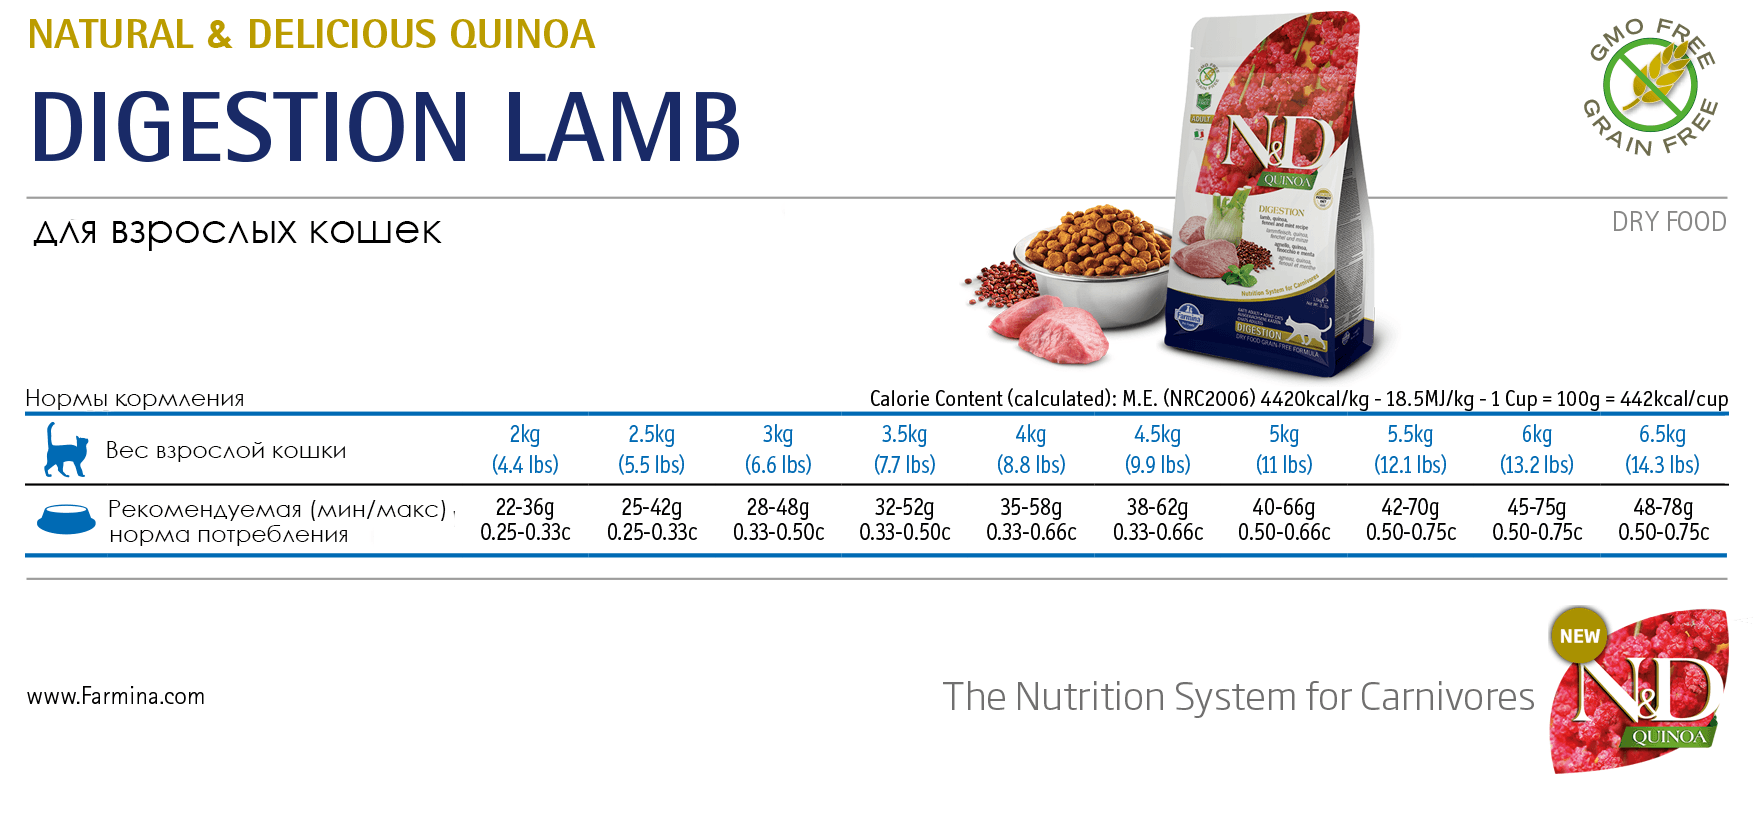 Grain Free Quinoa Digestion Lamb